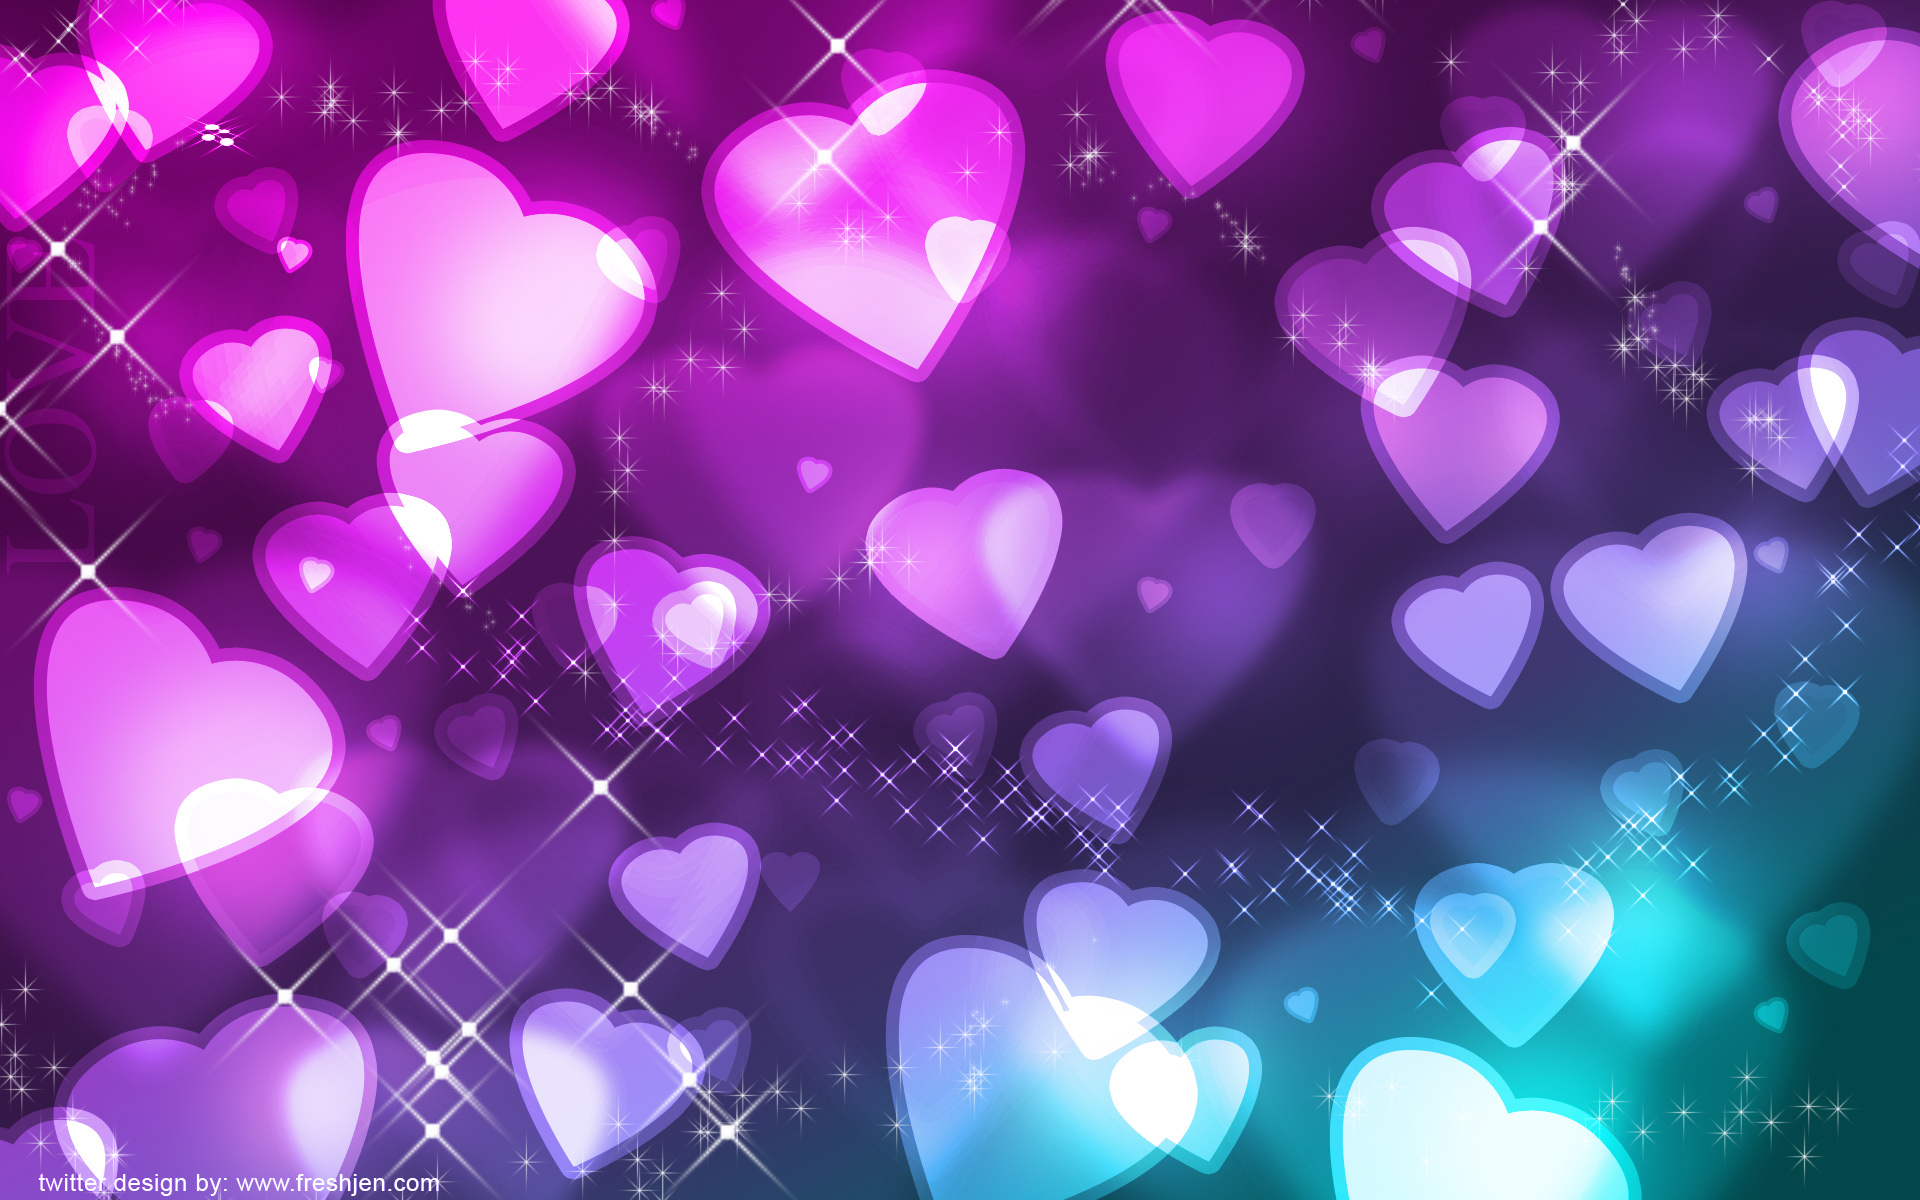 Twitter Background Backgrounds Heart Hearts Freshjen wallpapers HD 1920x1200